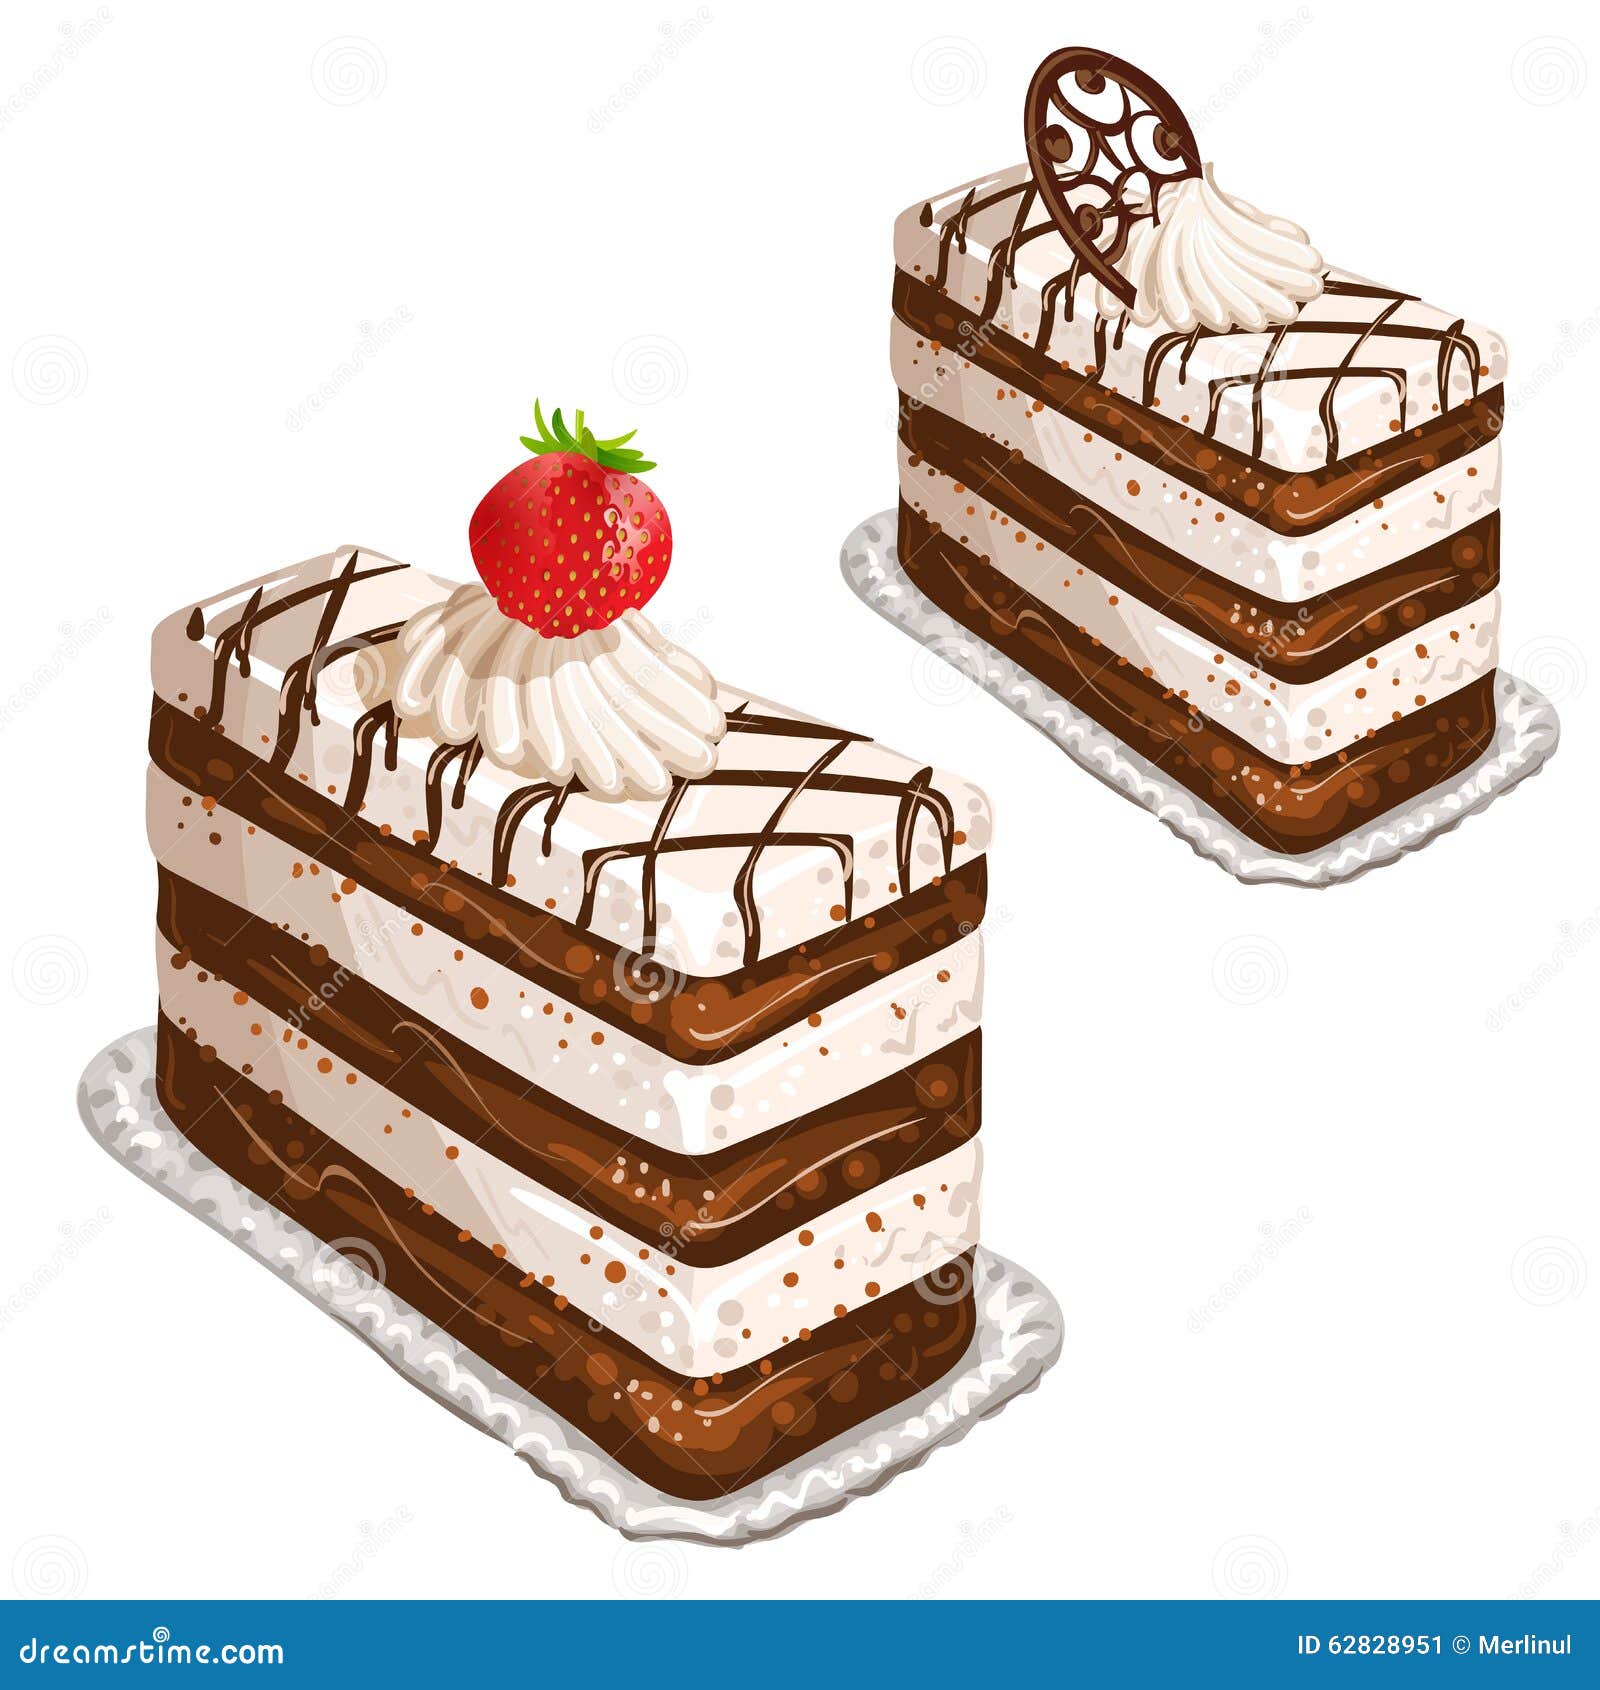 巧克力草莓芝士蛋糕怎么做_巧克力草莓芝士蛋糕的做法_贝尔烘焙_豆果美食